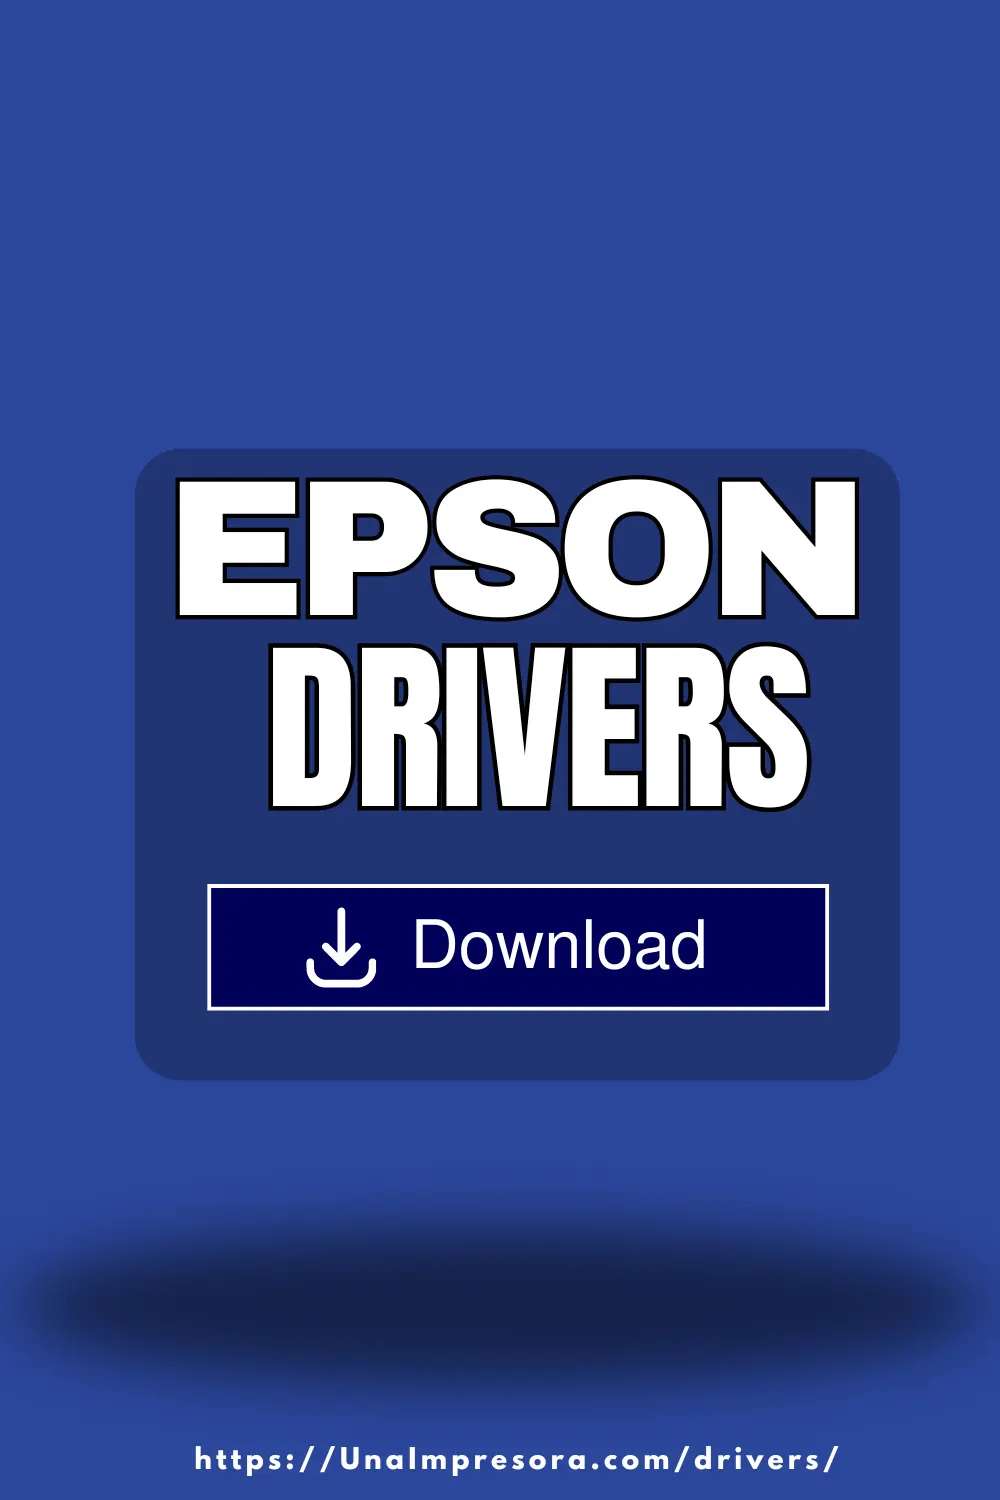 EPSON Drivers Descarga